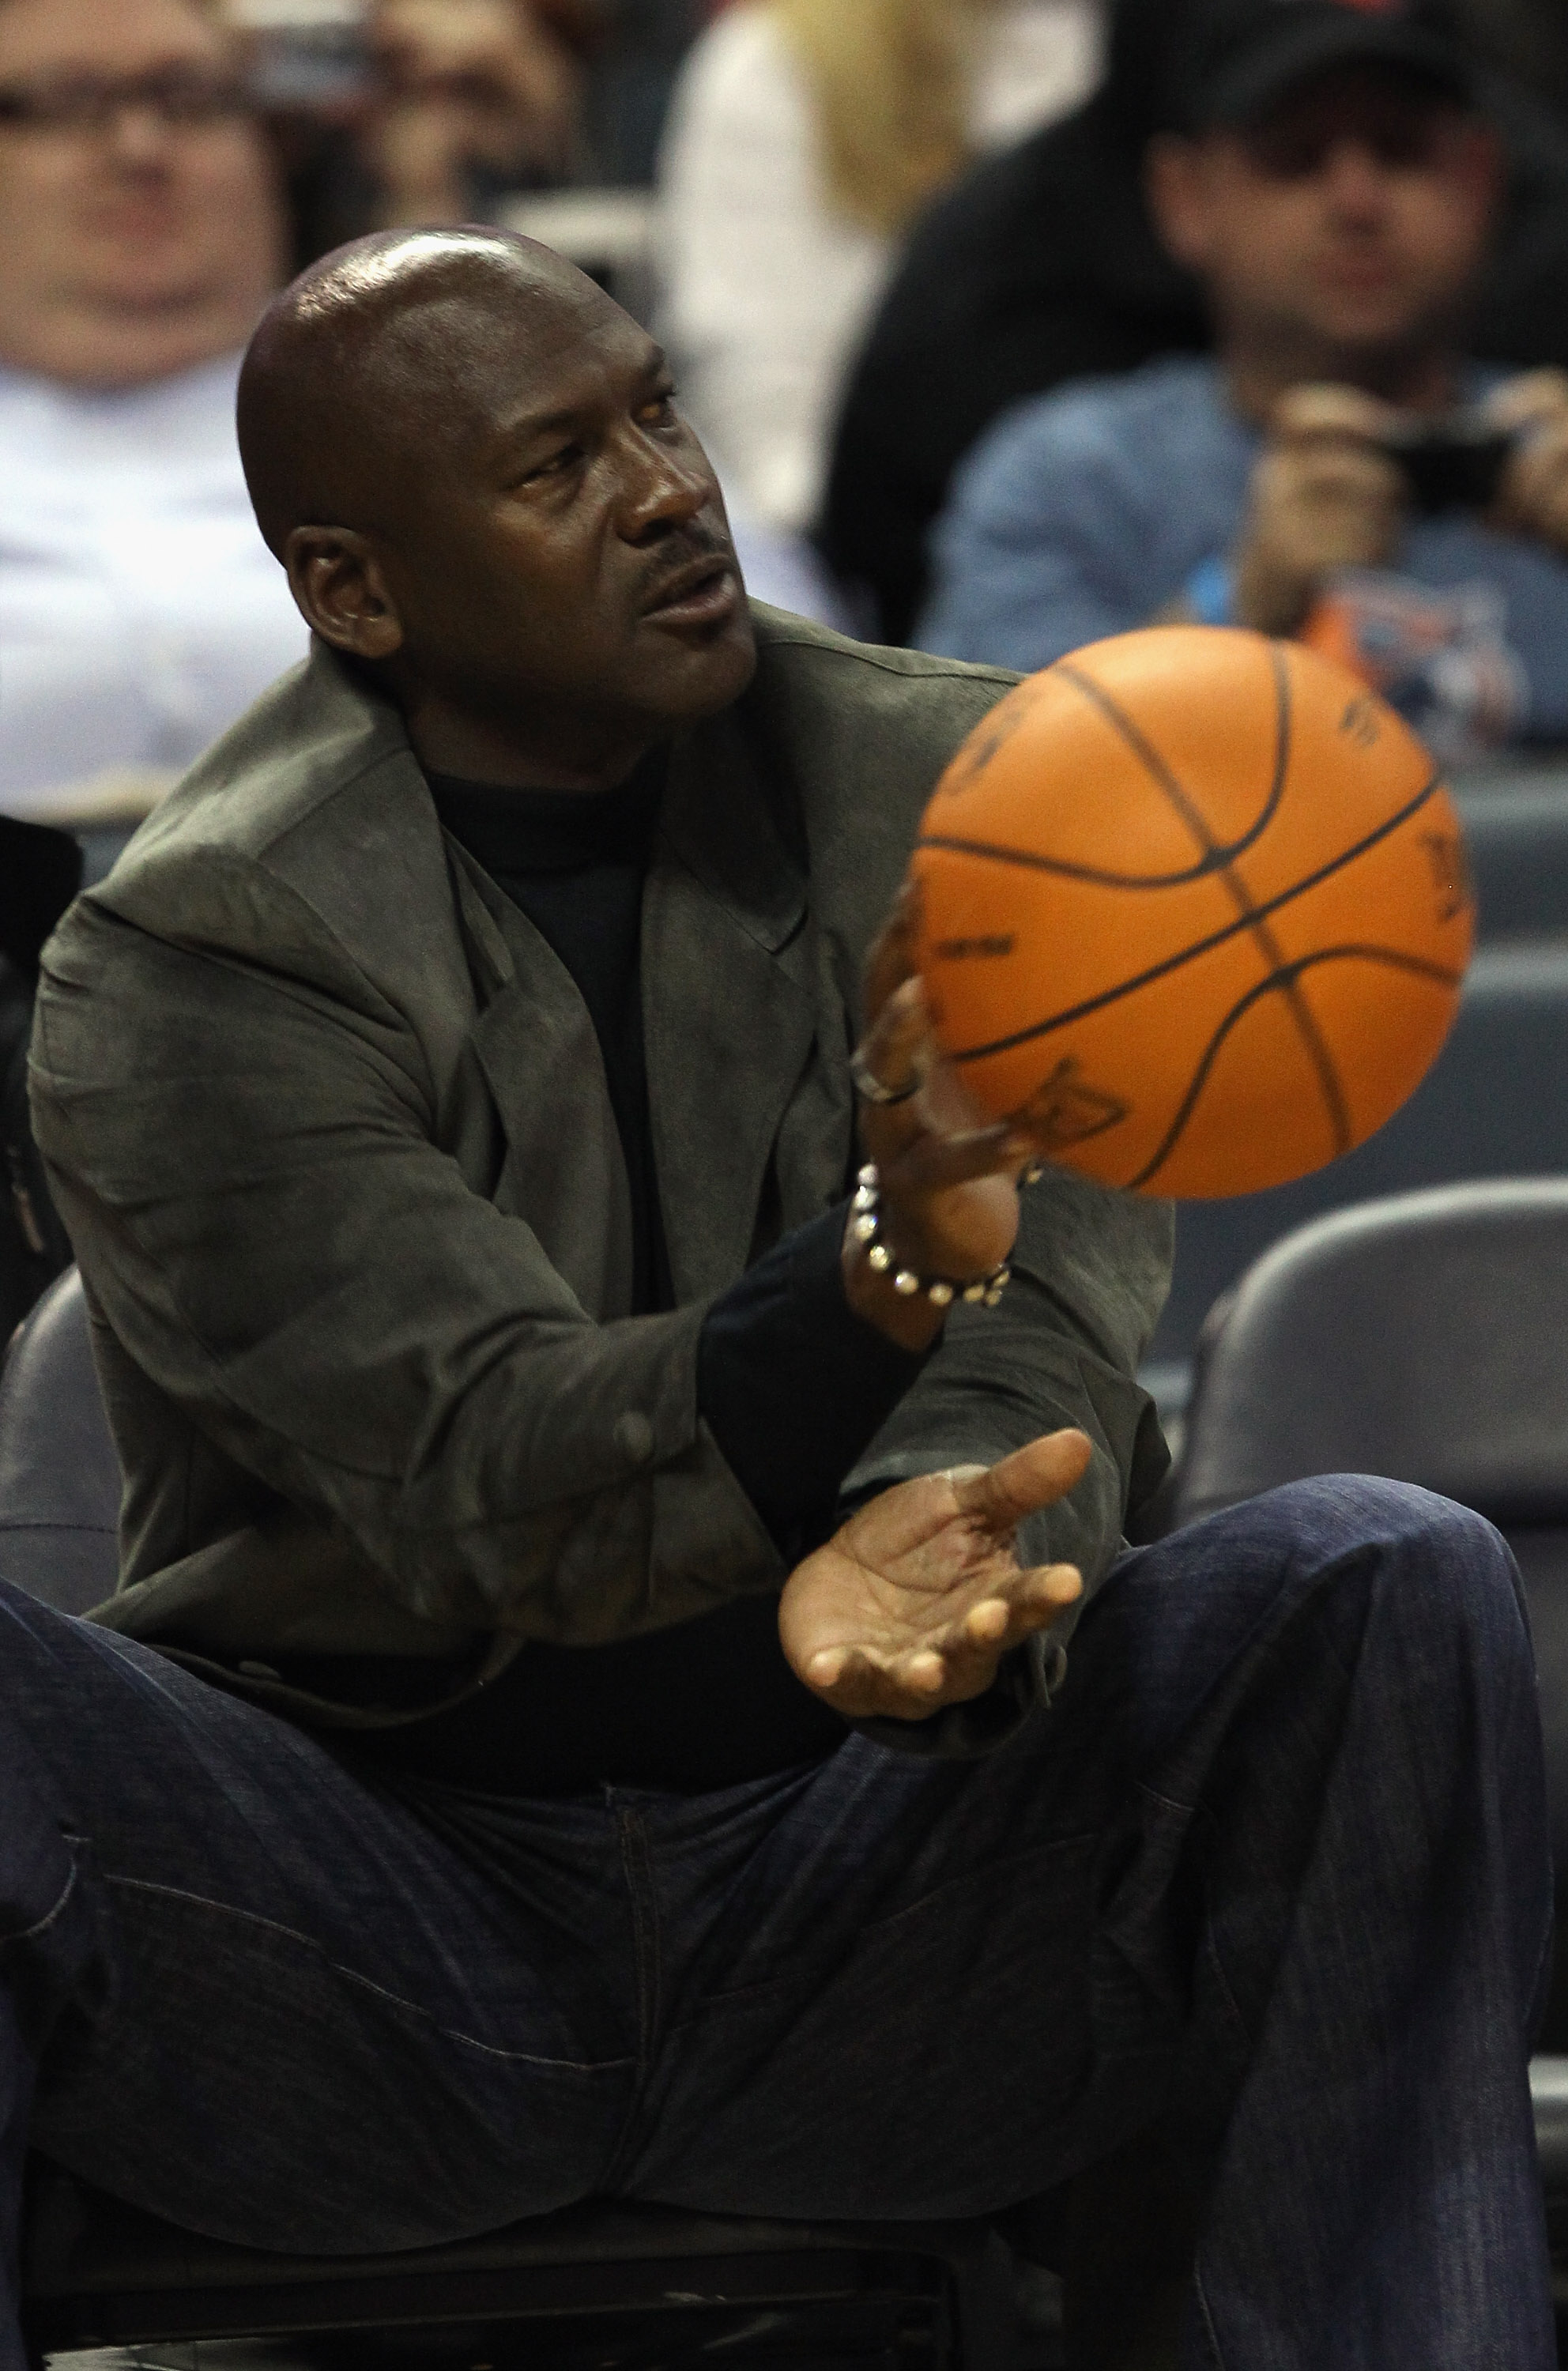 Phil Jackson answers the MJ-Kobe debate